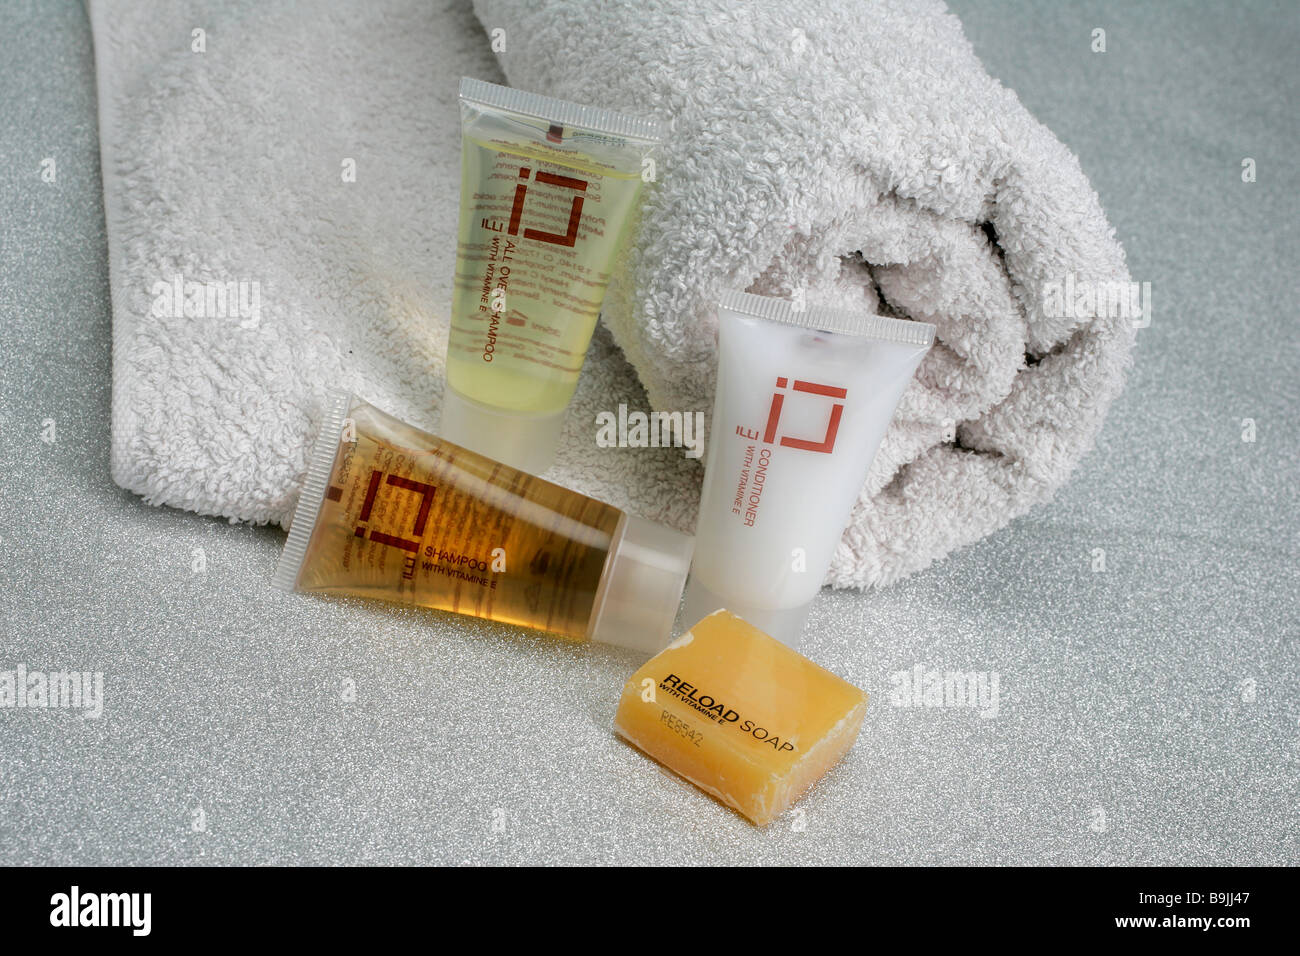 Hôtel shampooing cheveux Produits de toilette corps cosmétique flacon baigneuse lotion gel produit produits douche douche Banque D'Images